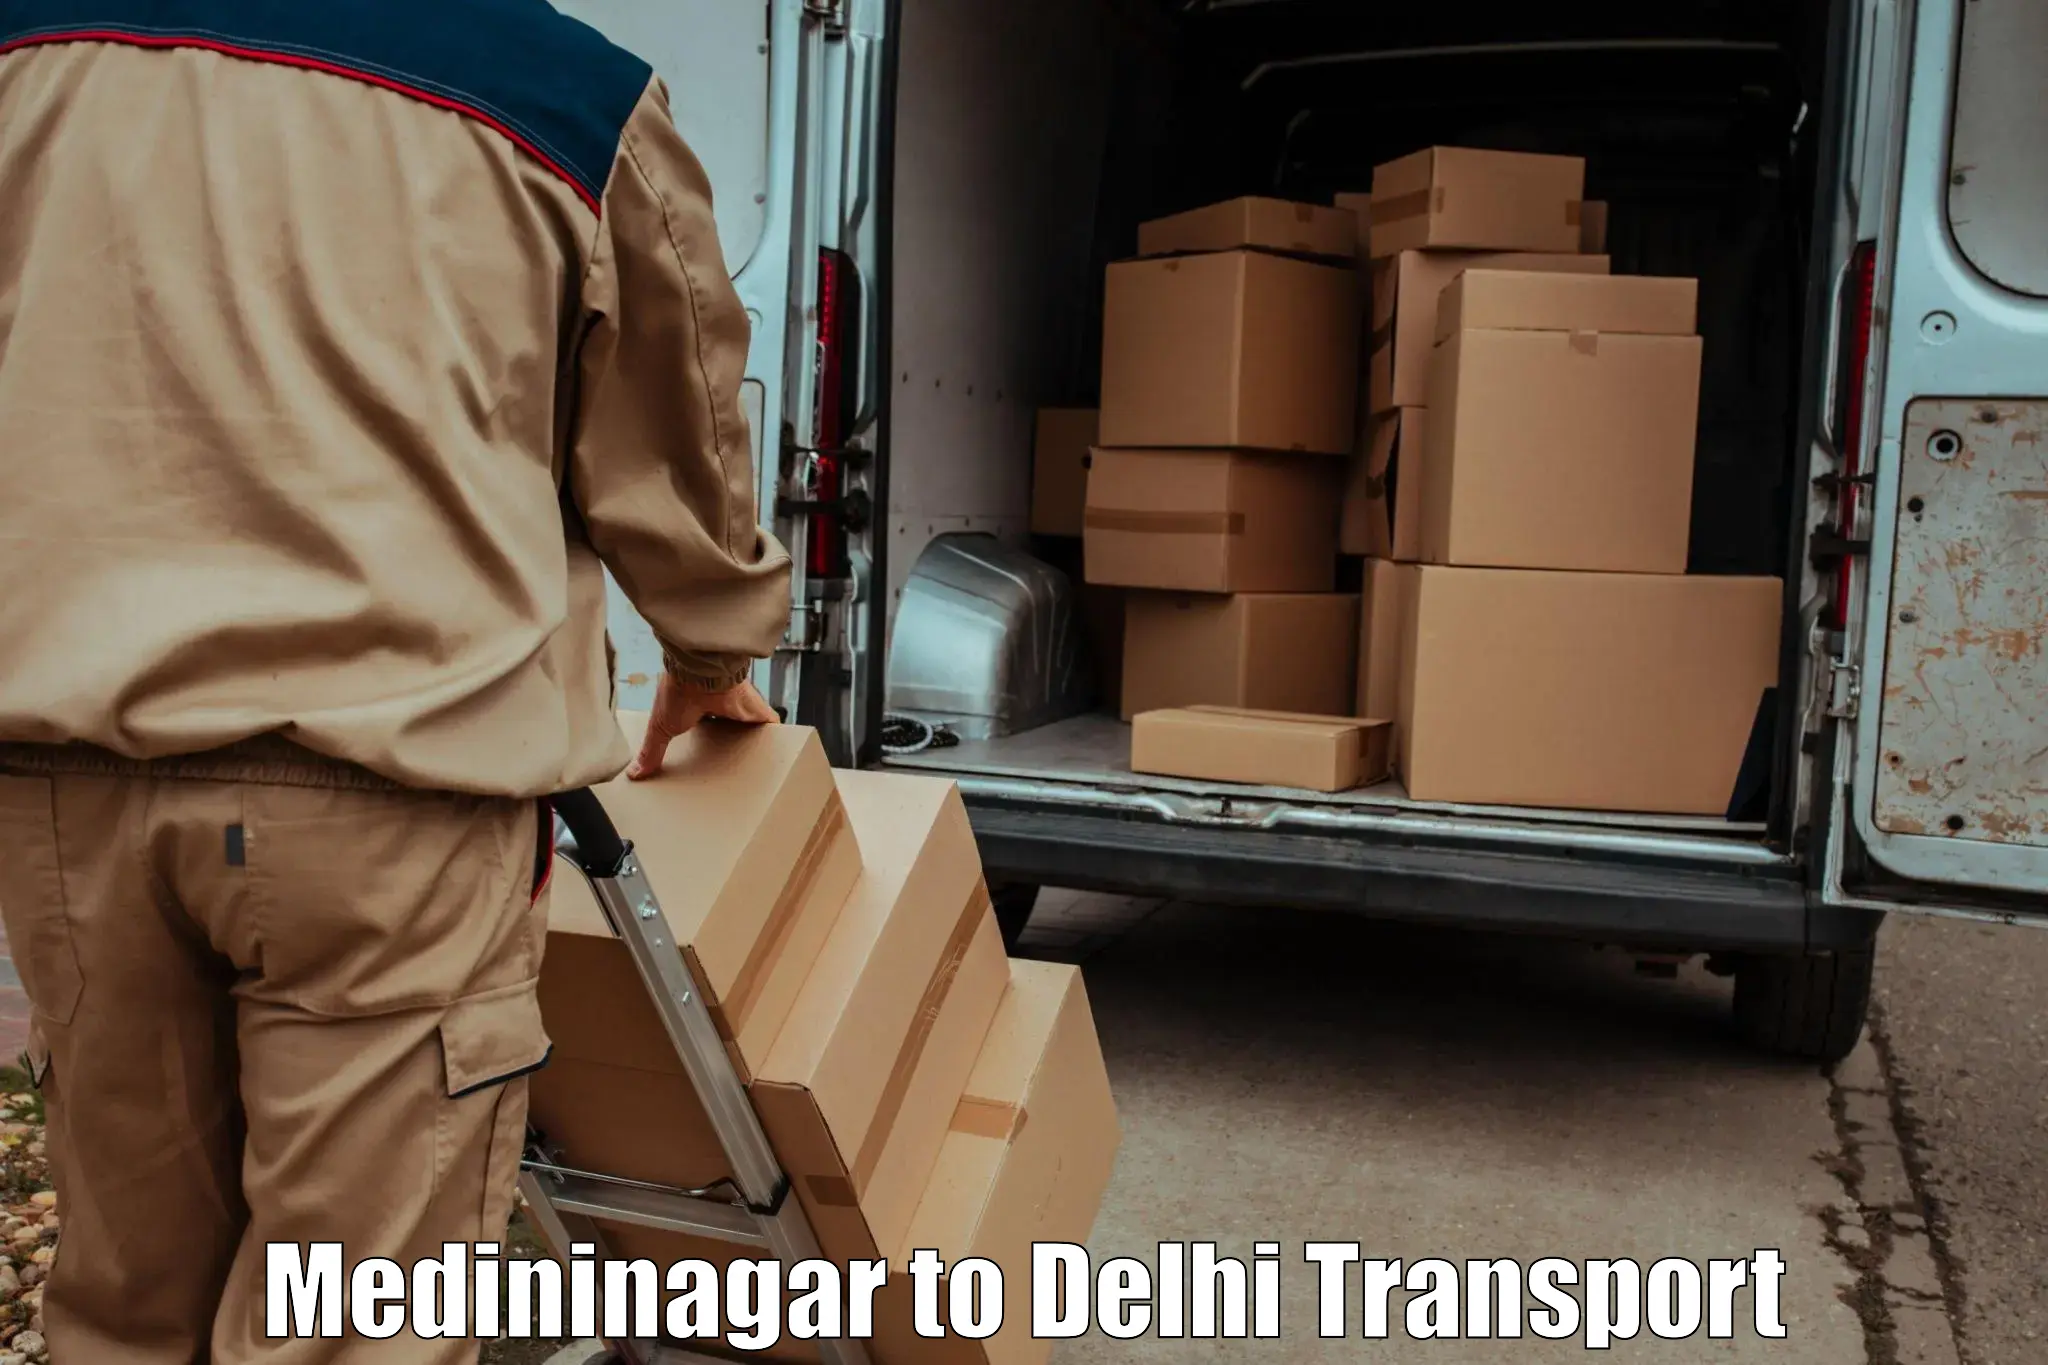 Transport services in Medininagar to Delhi Technological University DTU